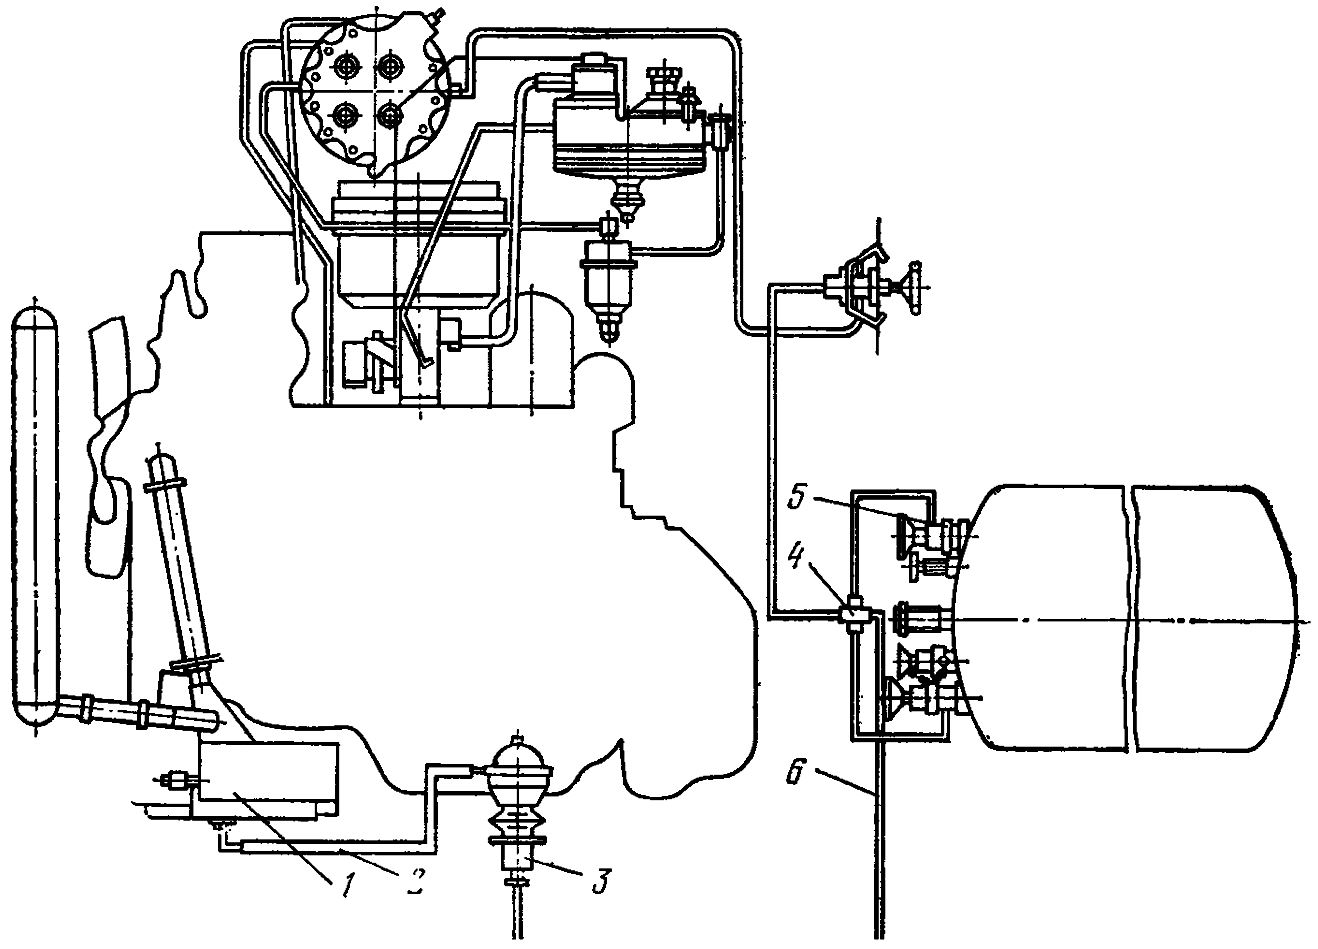 Схема тепловой подготовки газового двигателя ЗИЛ-138 инфракрасным излучателем при питании его от газового баллона автомобиля (автономный подогреватель)